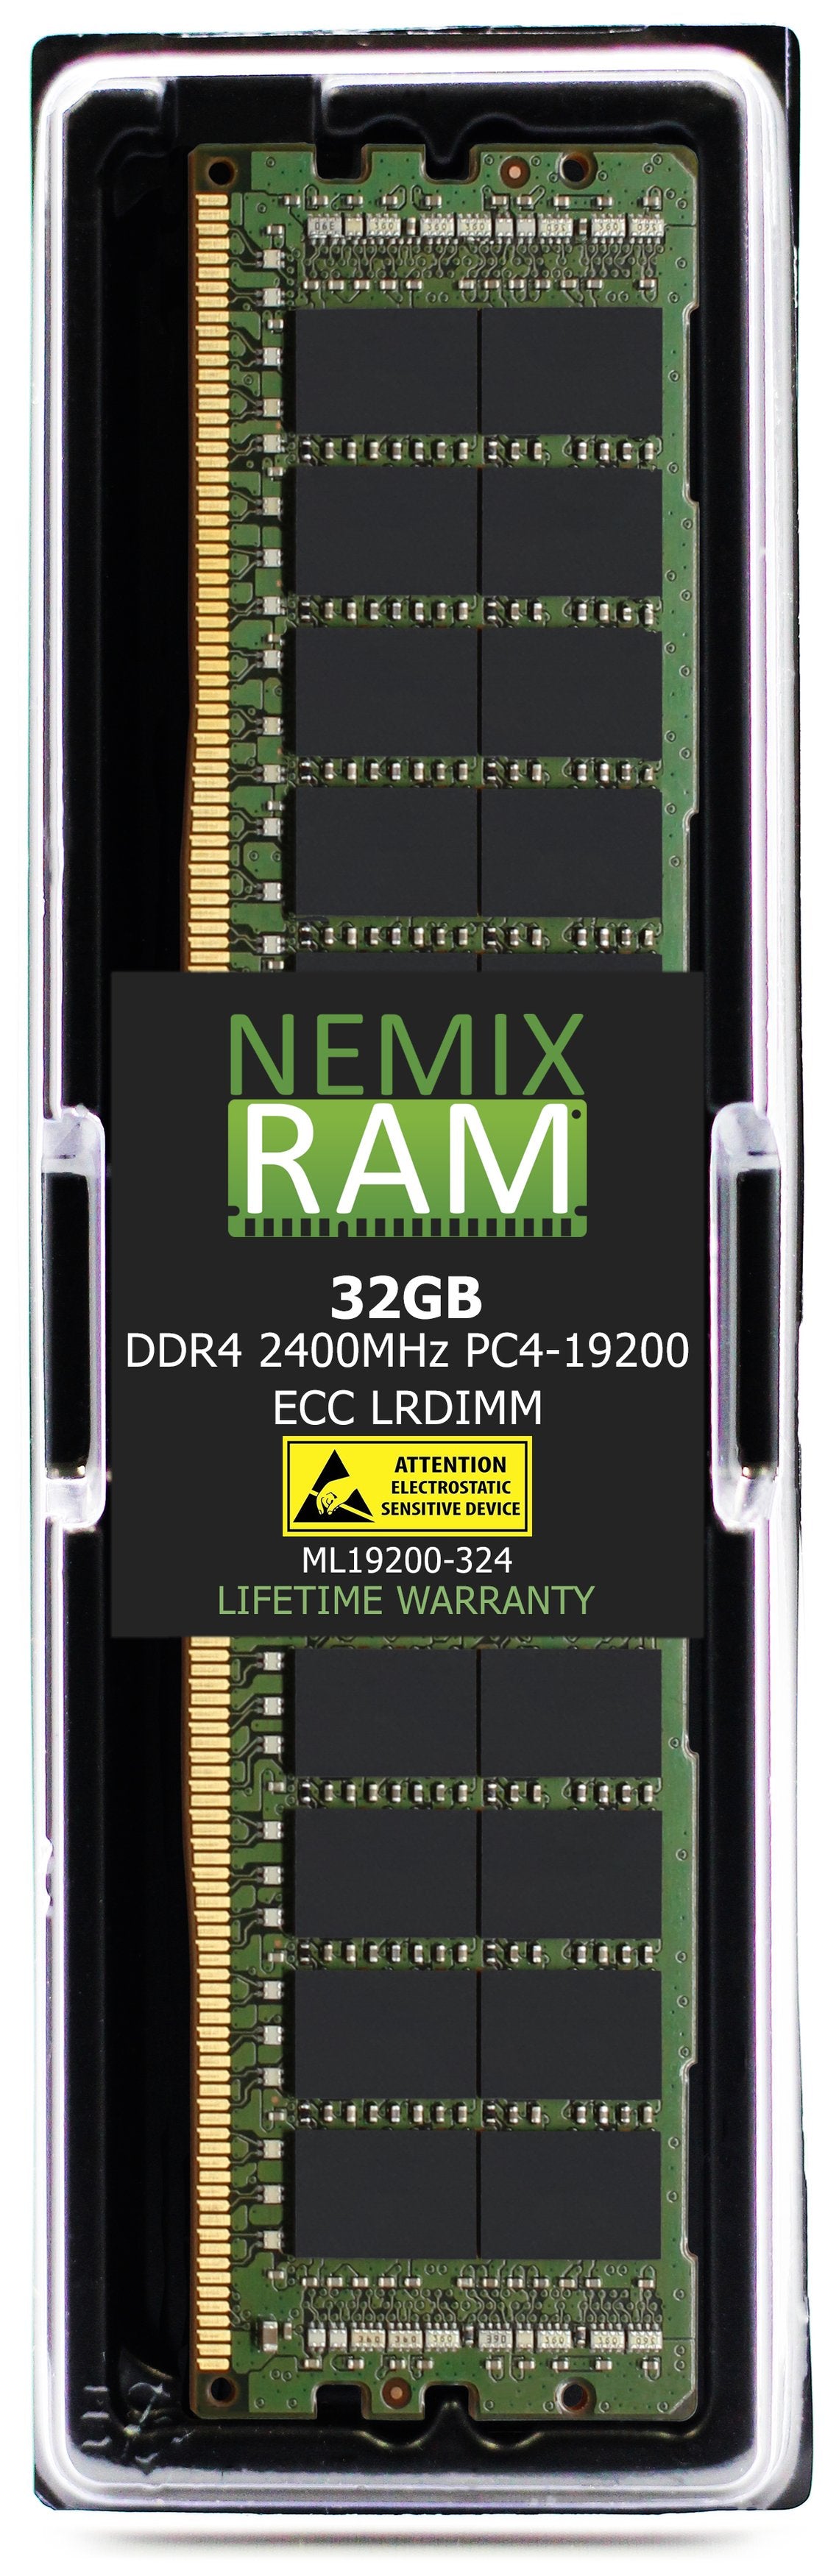 DELL SNP7FKKKC/32G A8711889 32GB DDR4 2400MHZ PC4-19200 LRDIMM Compatible Upgrade